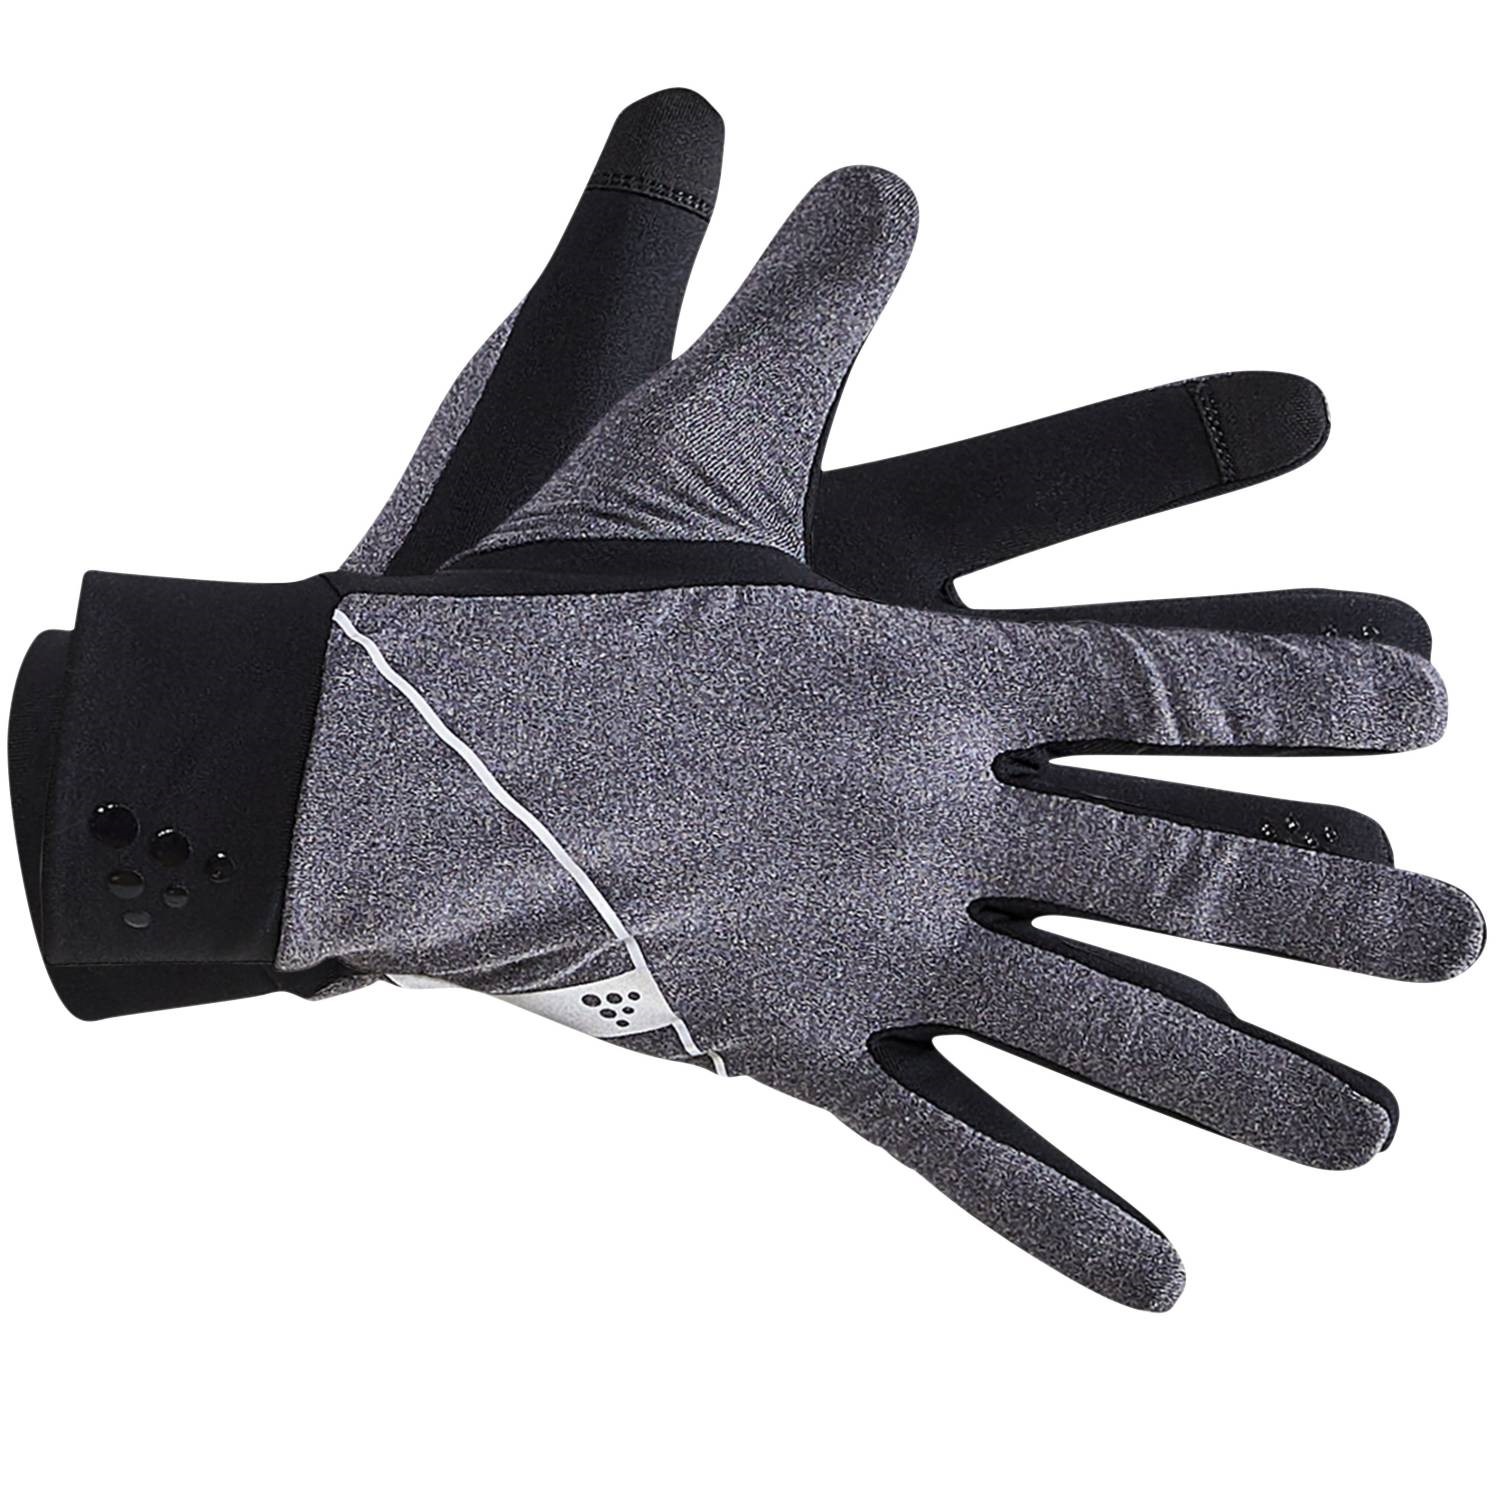 Craft Warm Jersey Glove